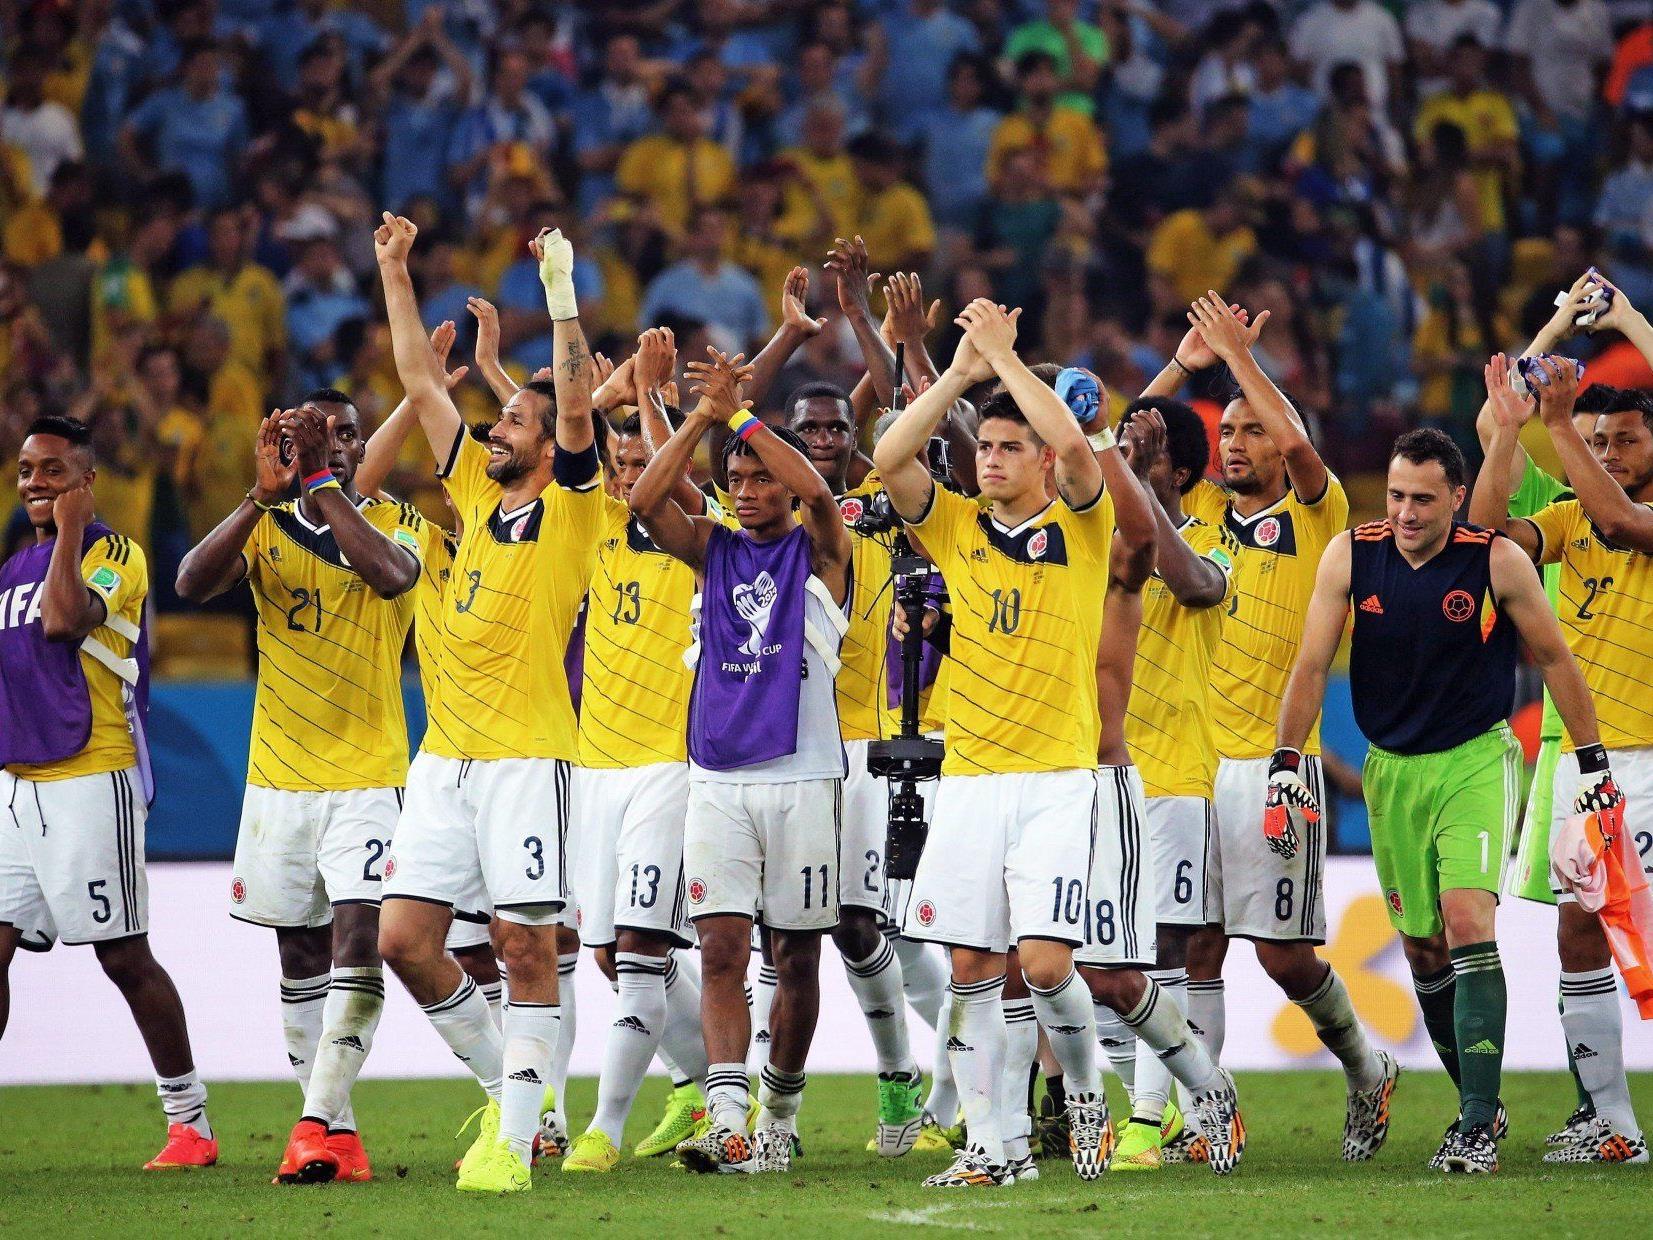 Brasilien und Kolumbien (Bild) stehen im Viertelfinale der Fußball-WM in Brasilien.